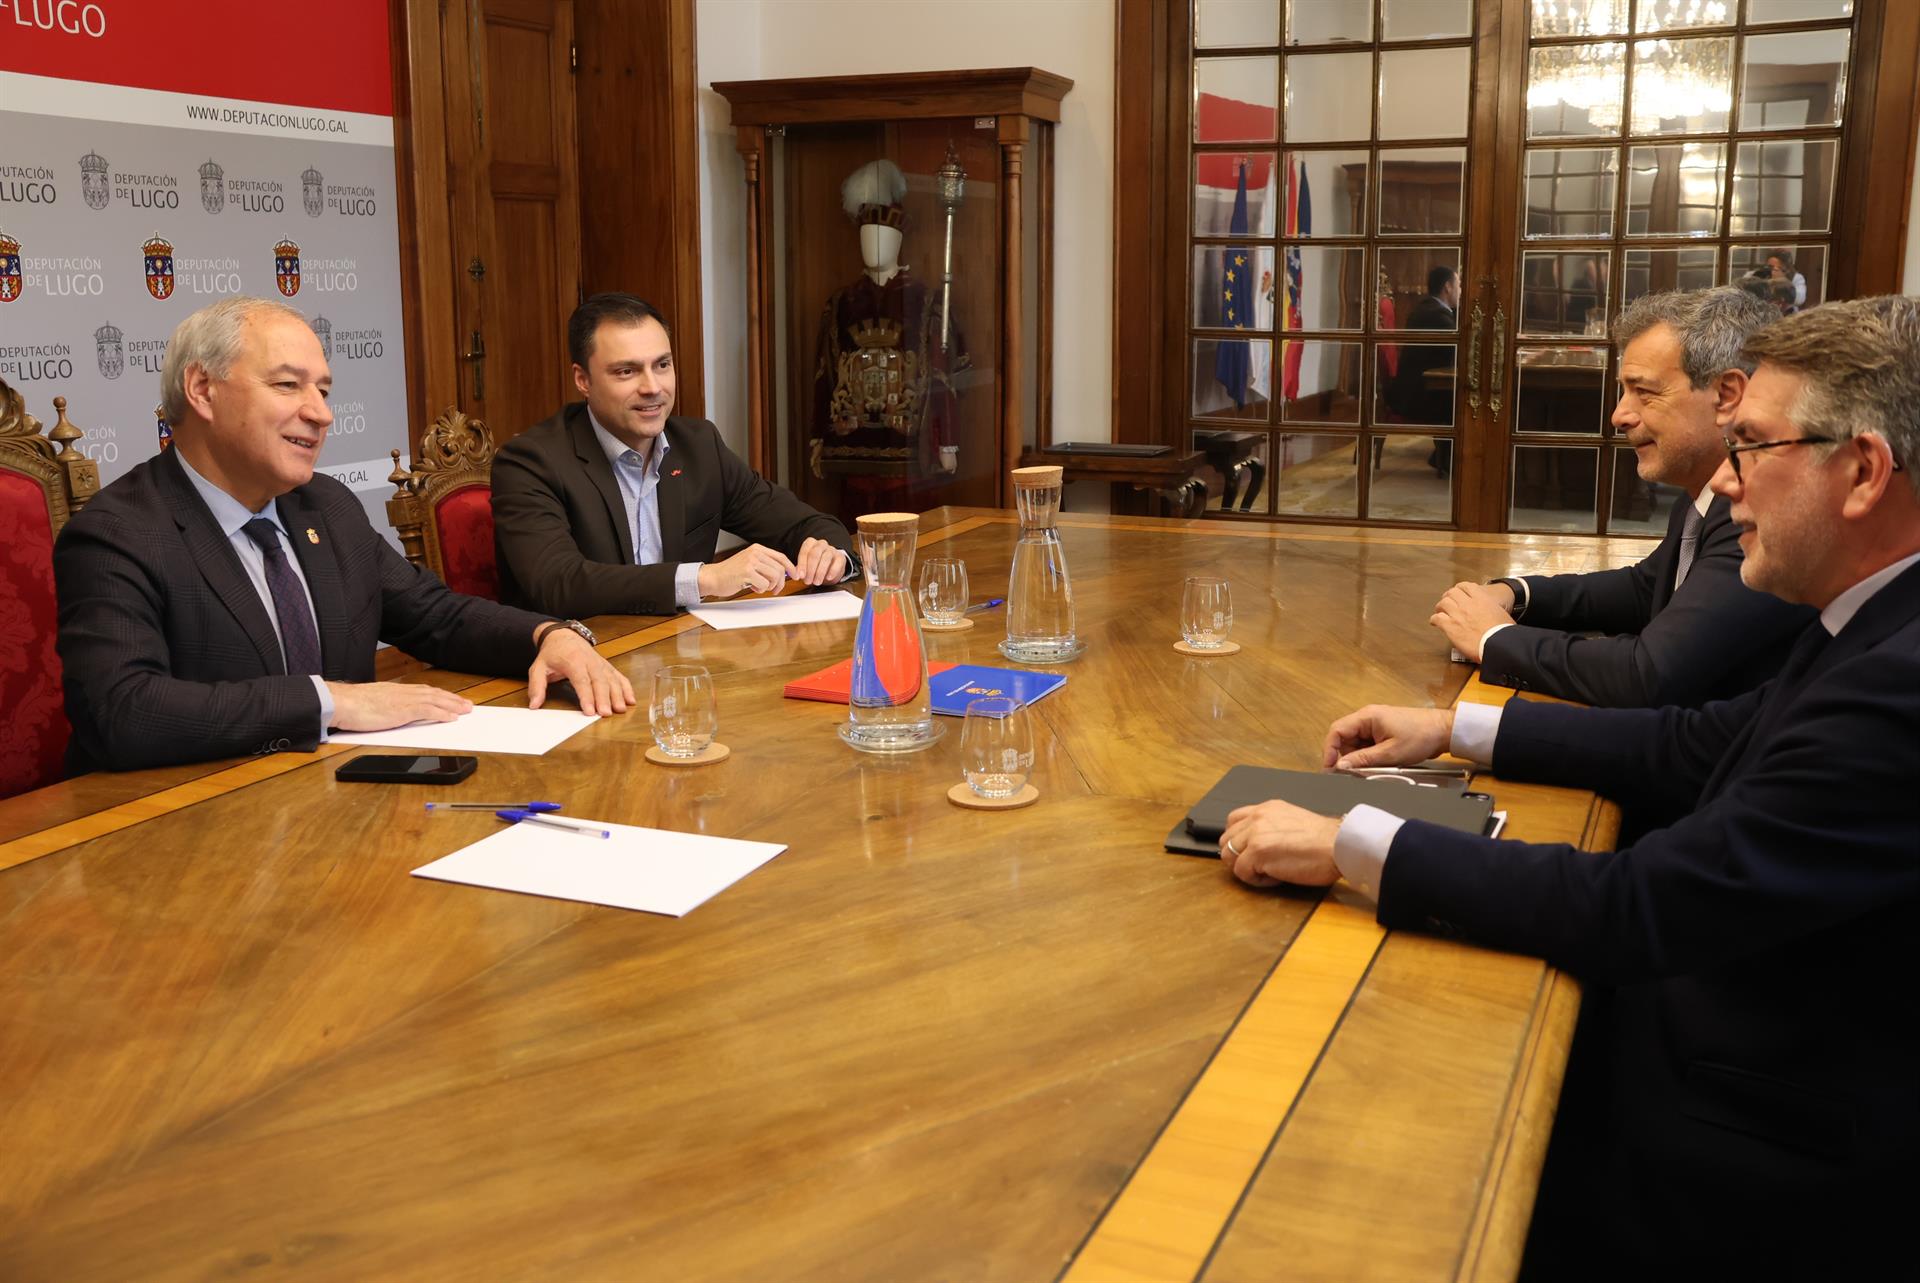 José Tomé, presidente de la Diputación de Lugo, se reúne con José Soares de Pina y Carlos Vanzeller, consejero delegado y viepresidente de Altri